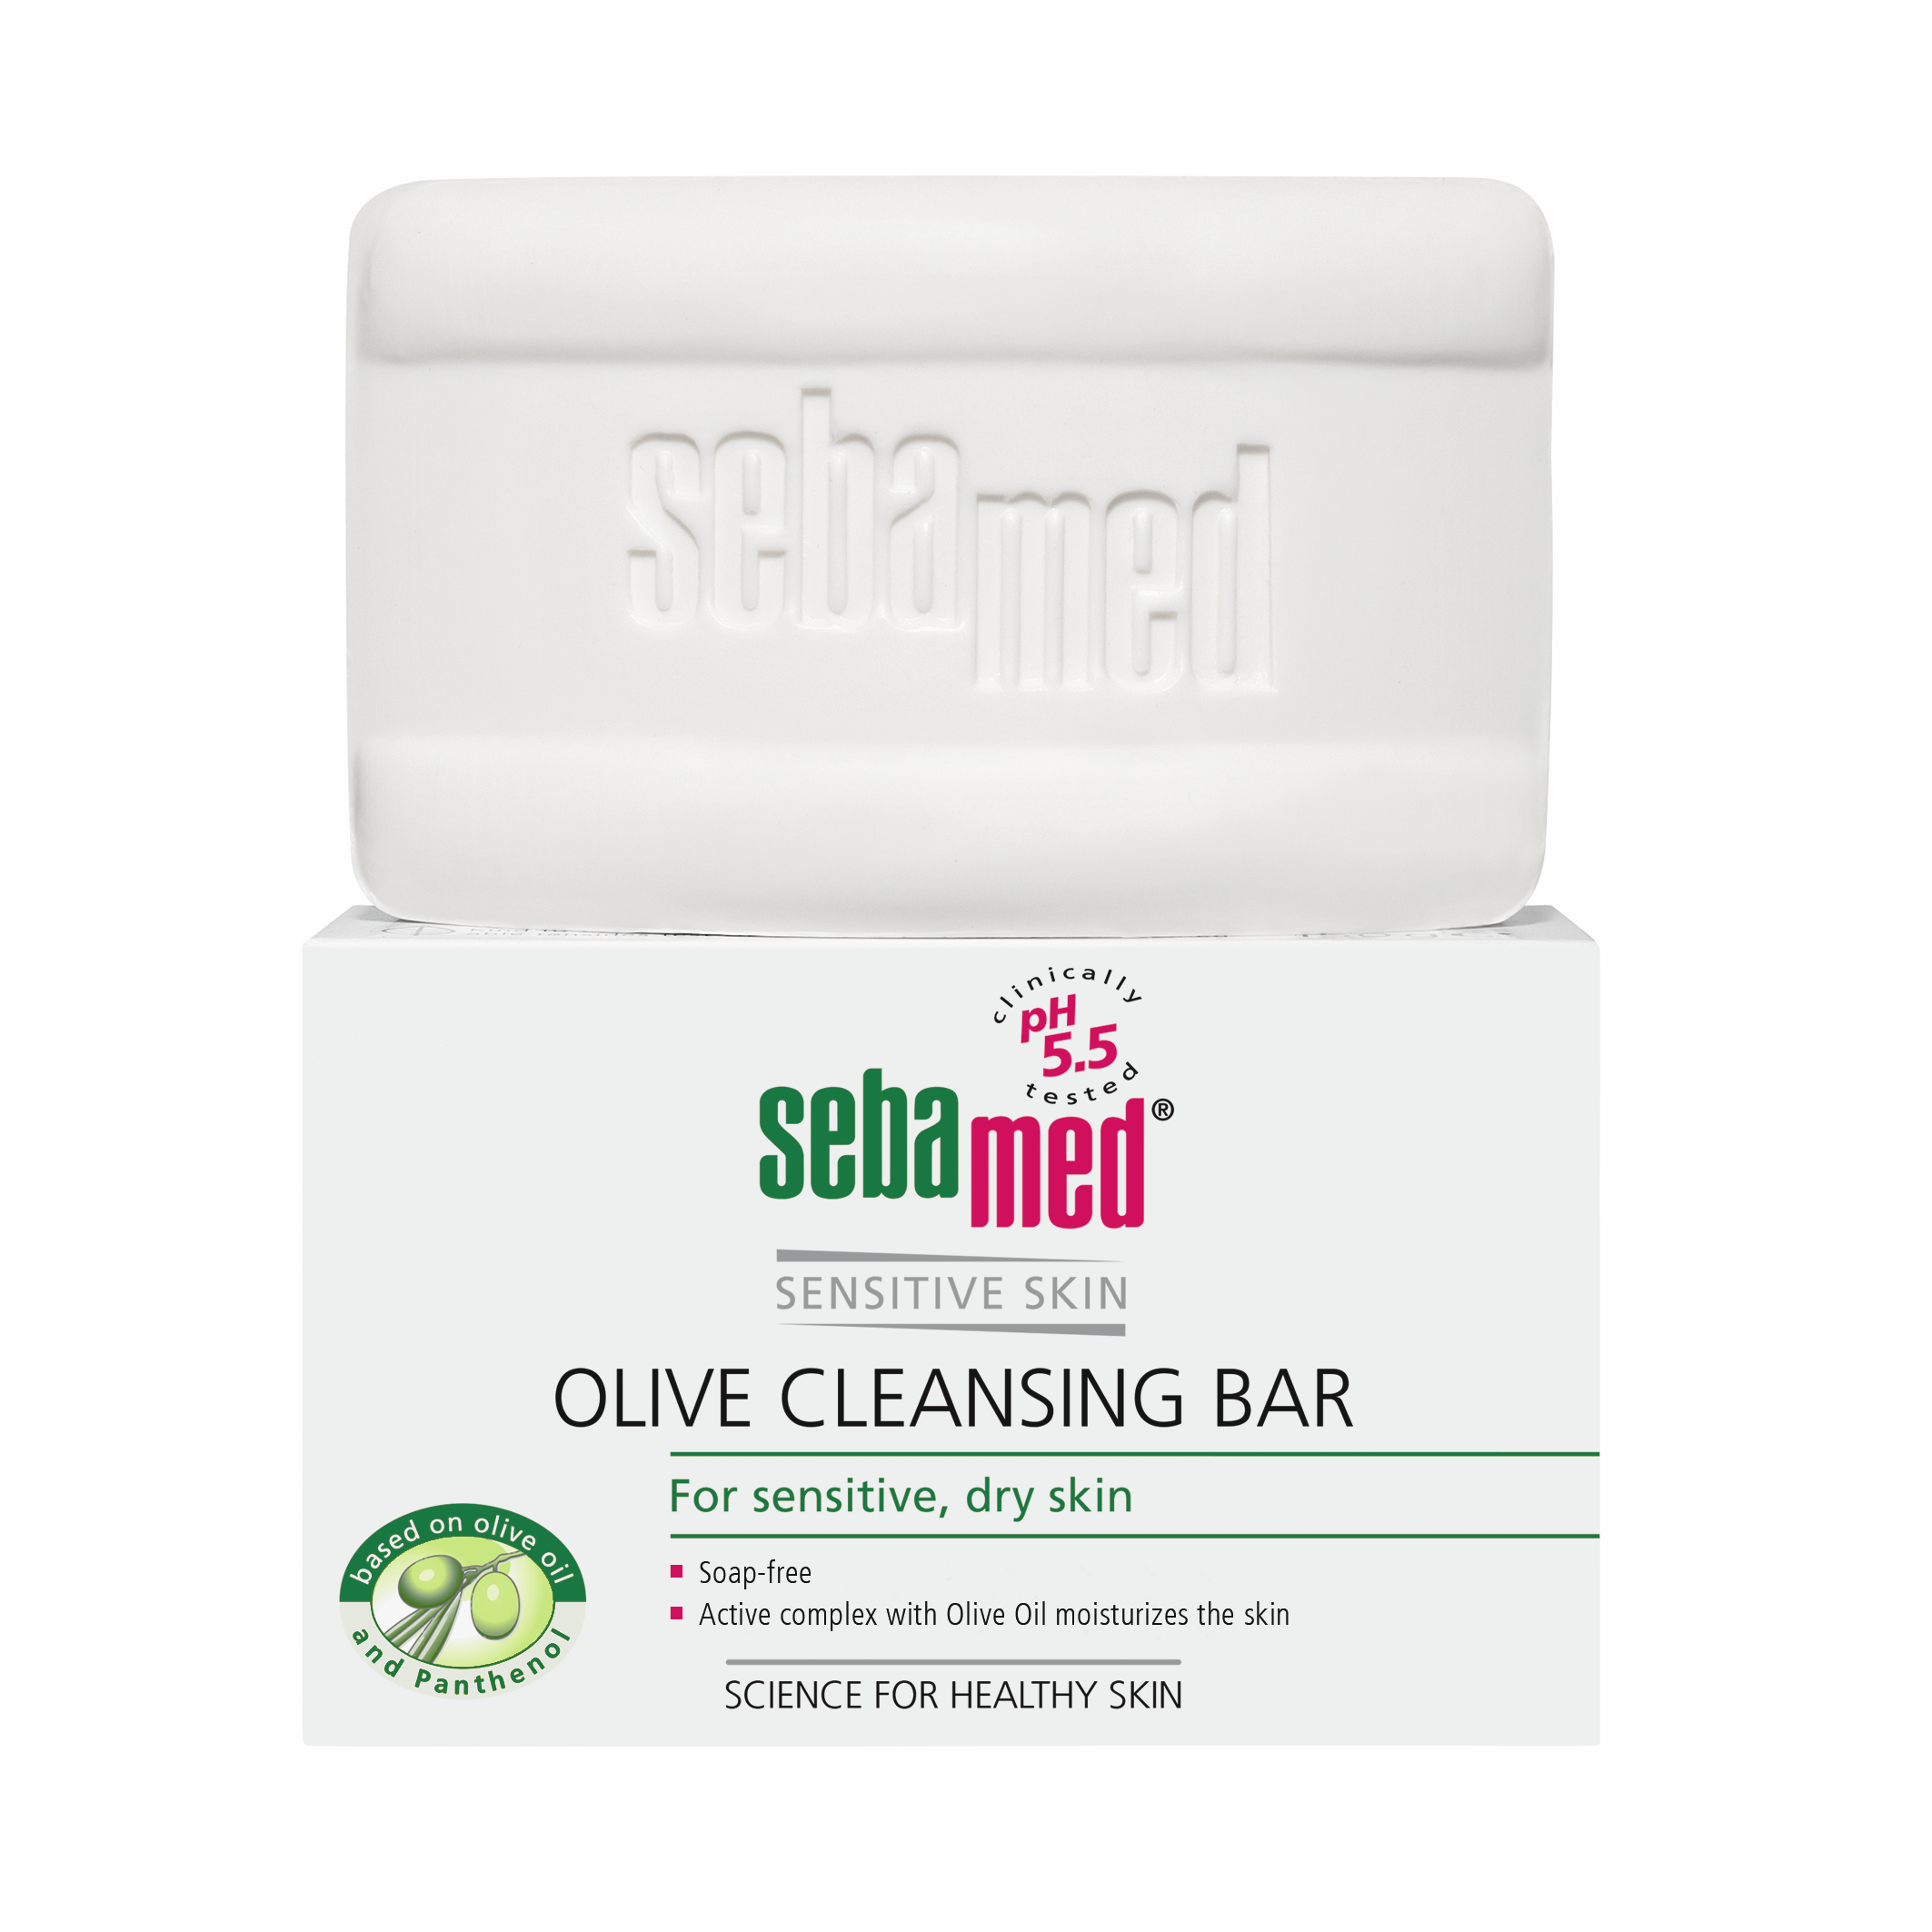 Îngrijirea pielii - Sebamed Sensitive Skin Calup dermatologic fără săpun, cu ulei de măsline * 150 g, clinicafarm.ro